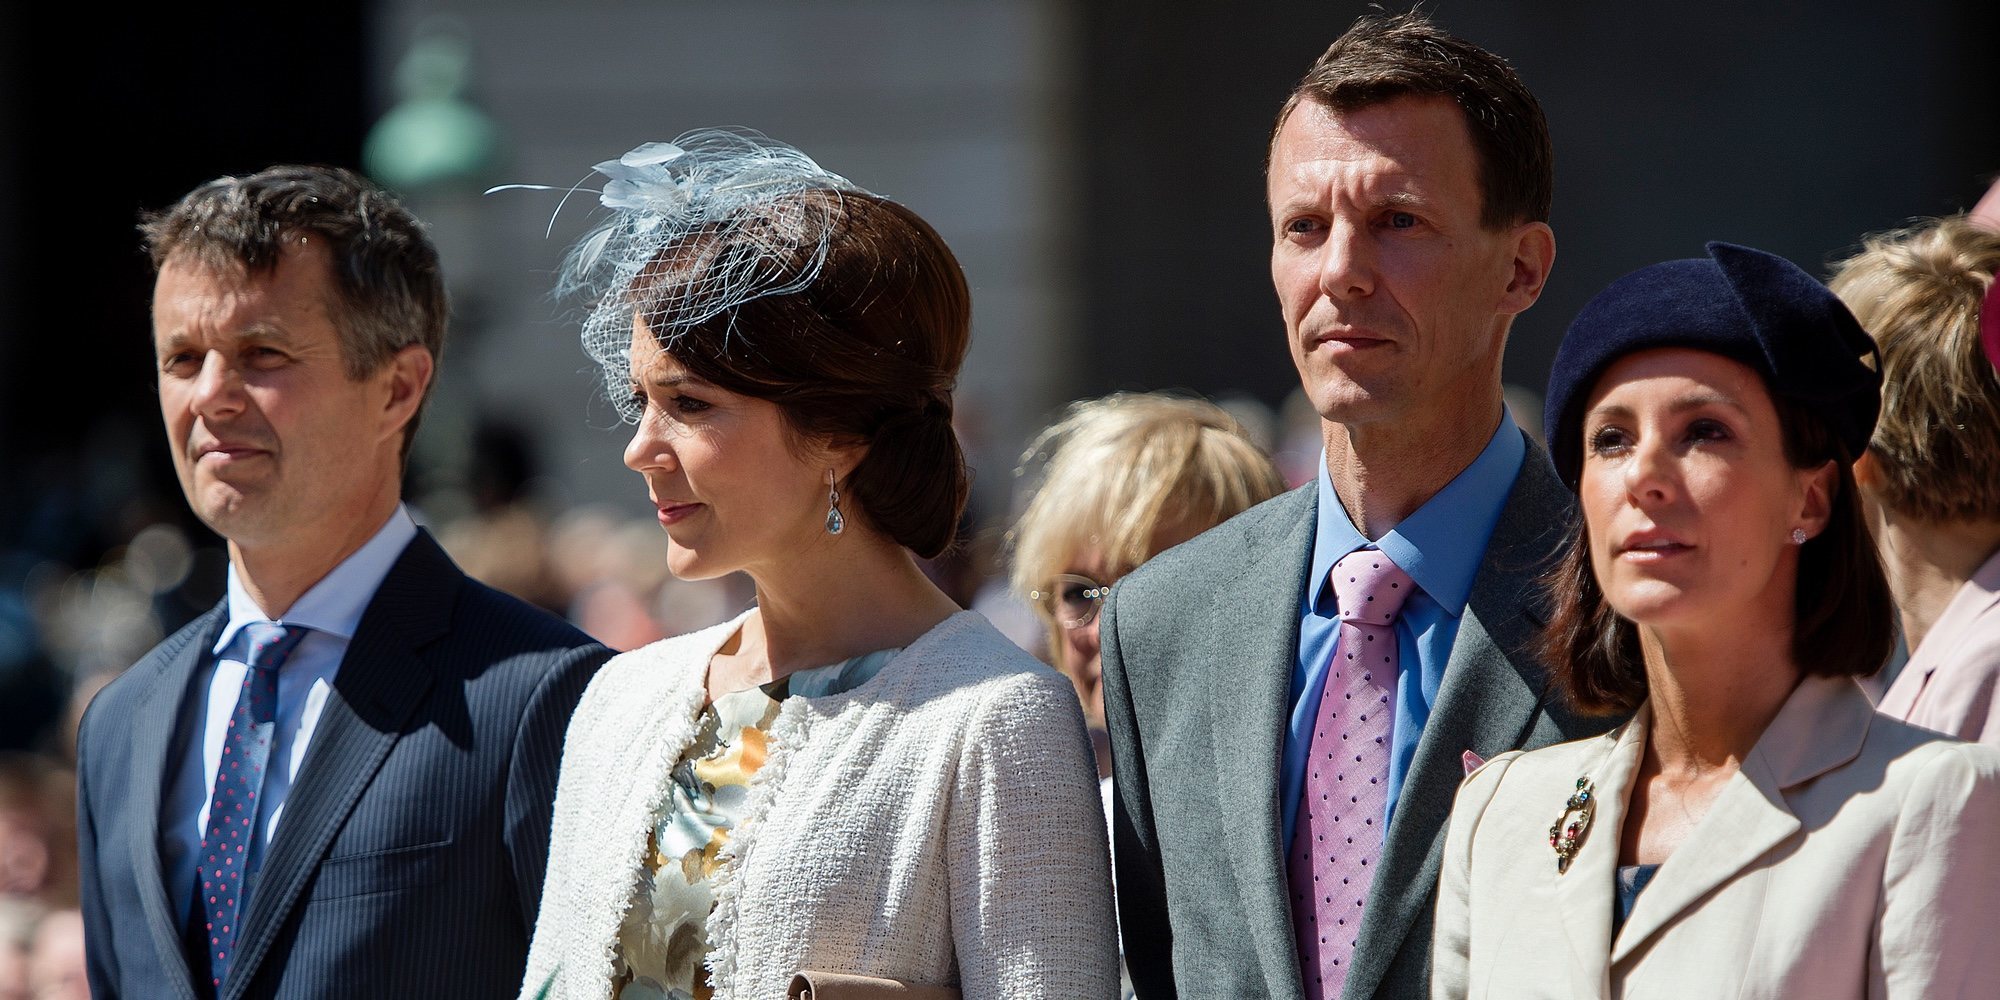 La Familia Real Danesa, entre la alegría por una mudanza y la tragedia por una muerte inesperada